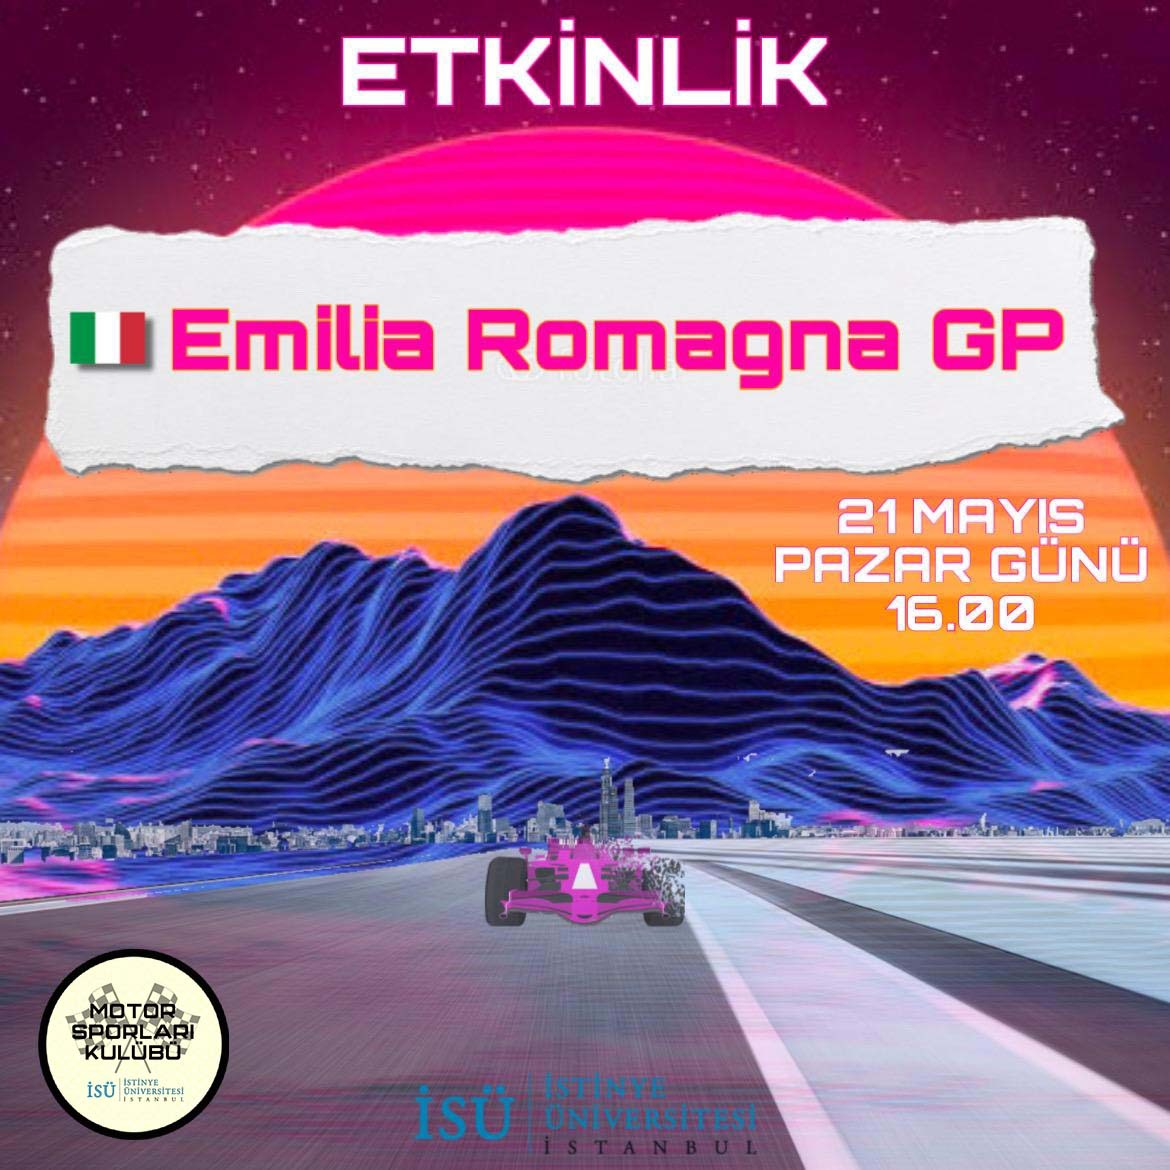 Formula 1 Emilia Romagna Gp-Motor Sporları Kulübü